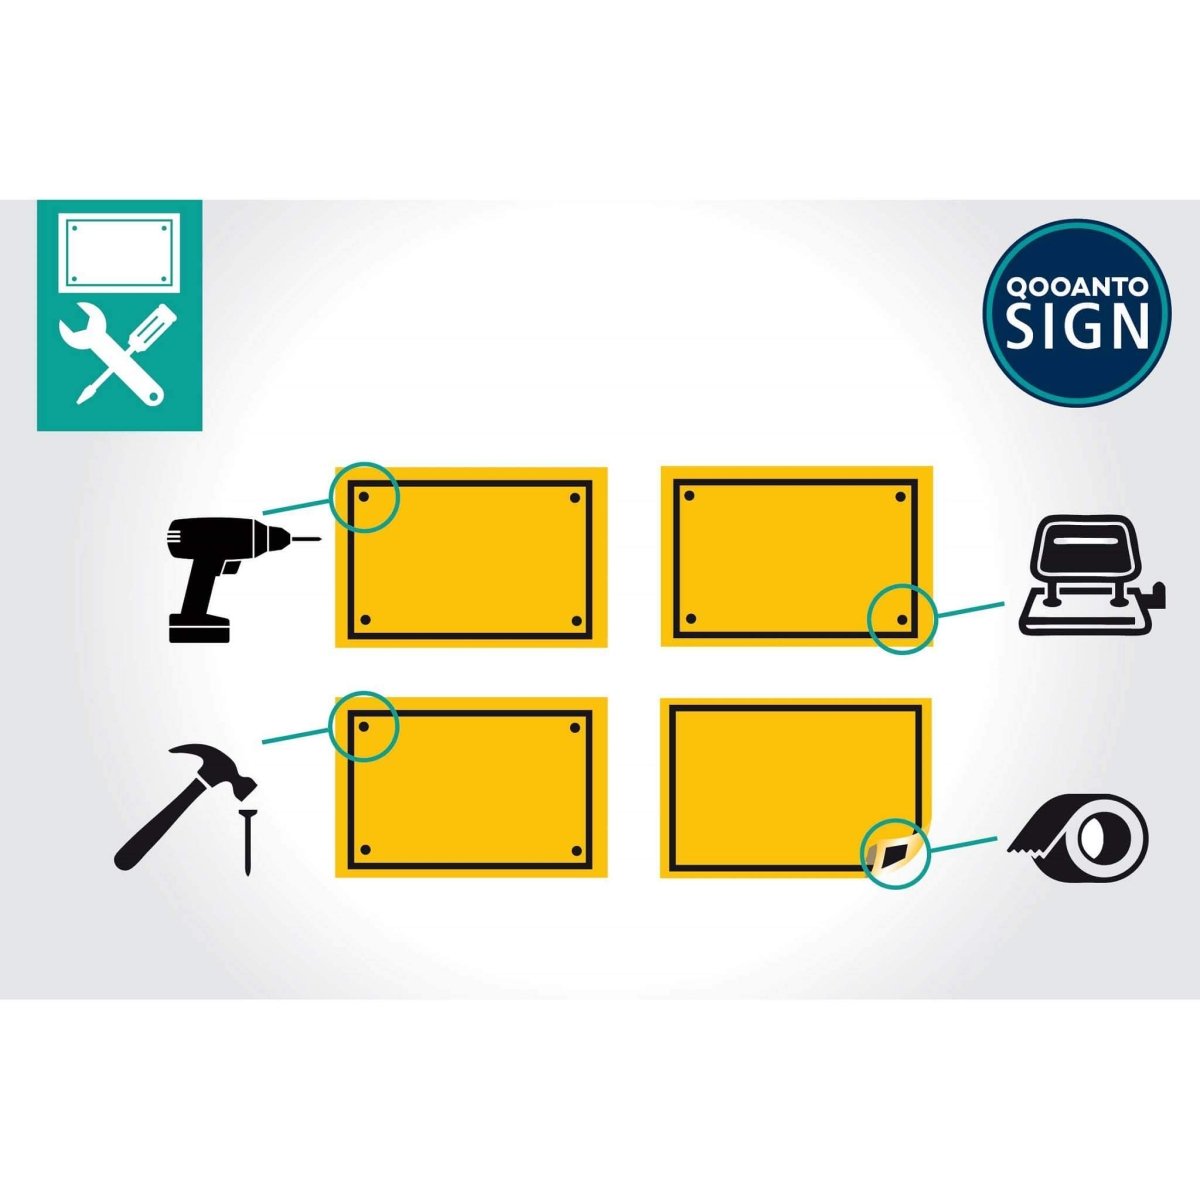 Privatgrundstück Parkieren Nur Für Kunden Schild aus Alu-Verbund mit UV-Schutz - QOOANTO-SIGN